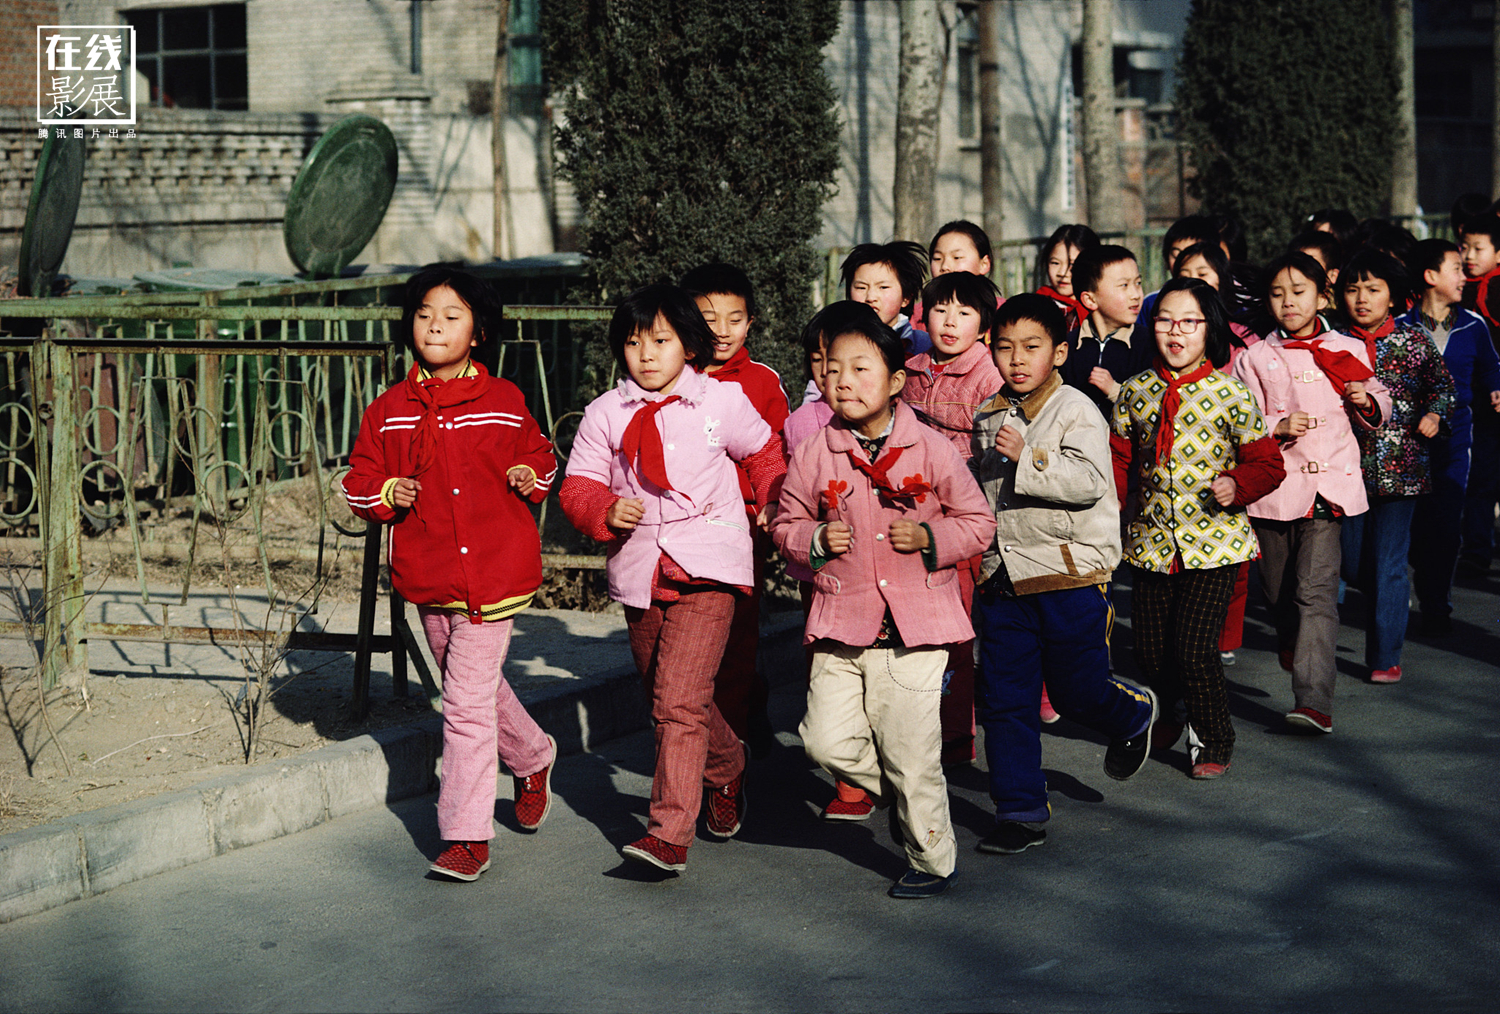 昨天的中国:法国摄影师拍下纯朴的八九十年代